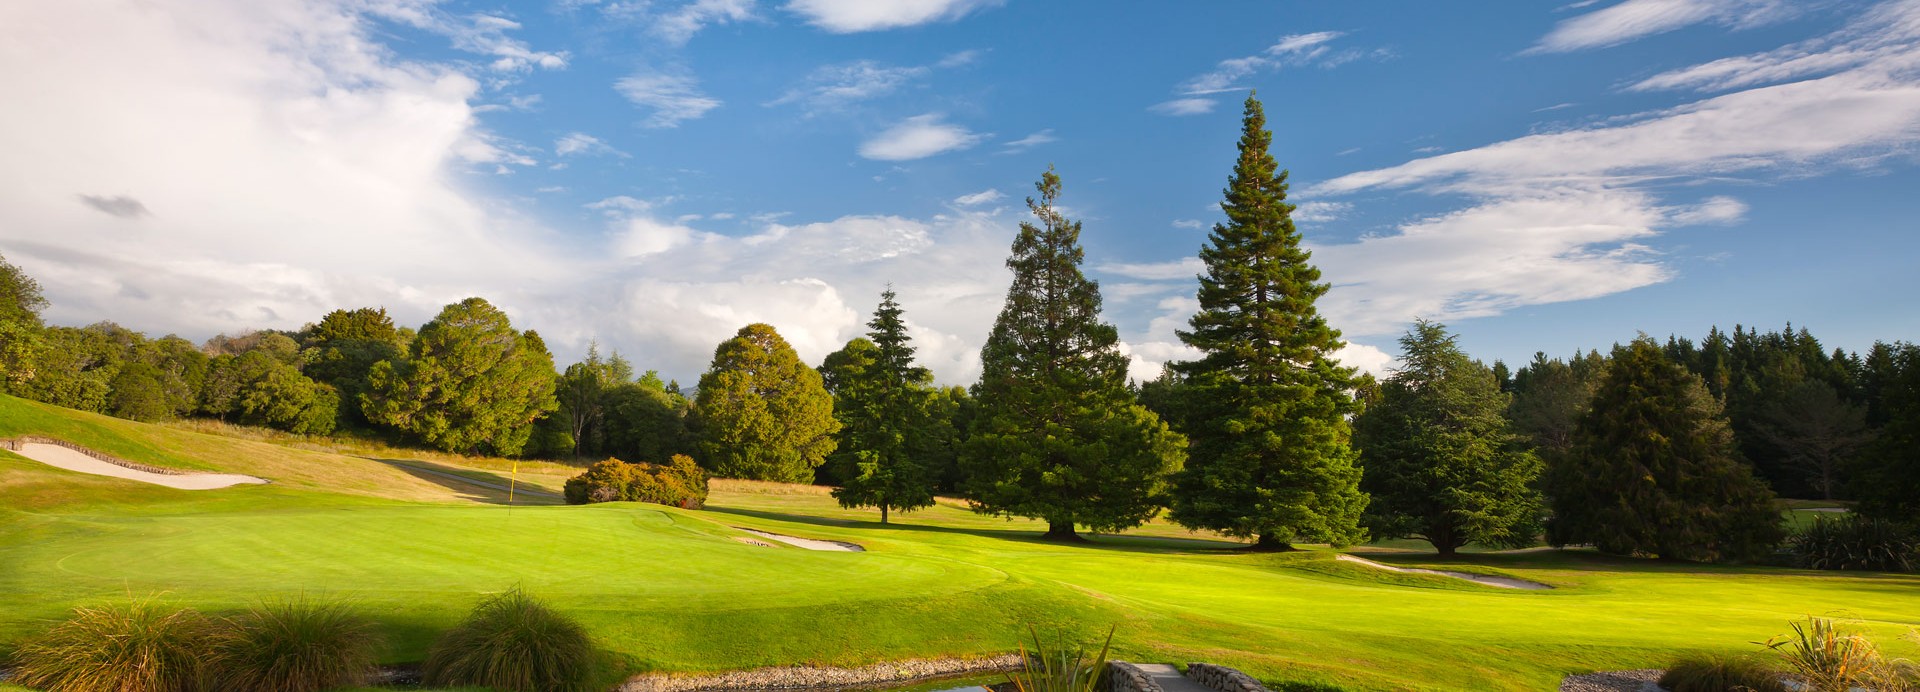 Wairakei Golf & Sanctuary  | Golfové zájezdy, golfová dovolená, luxusní golf